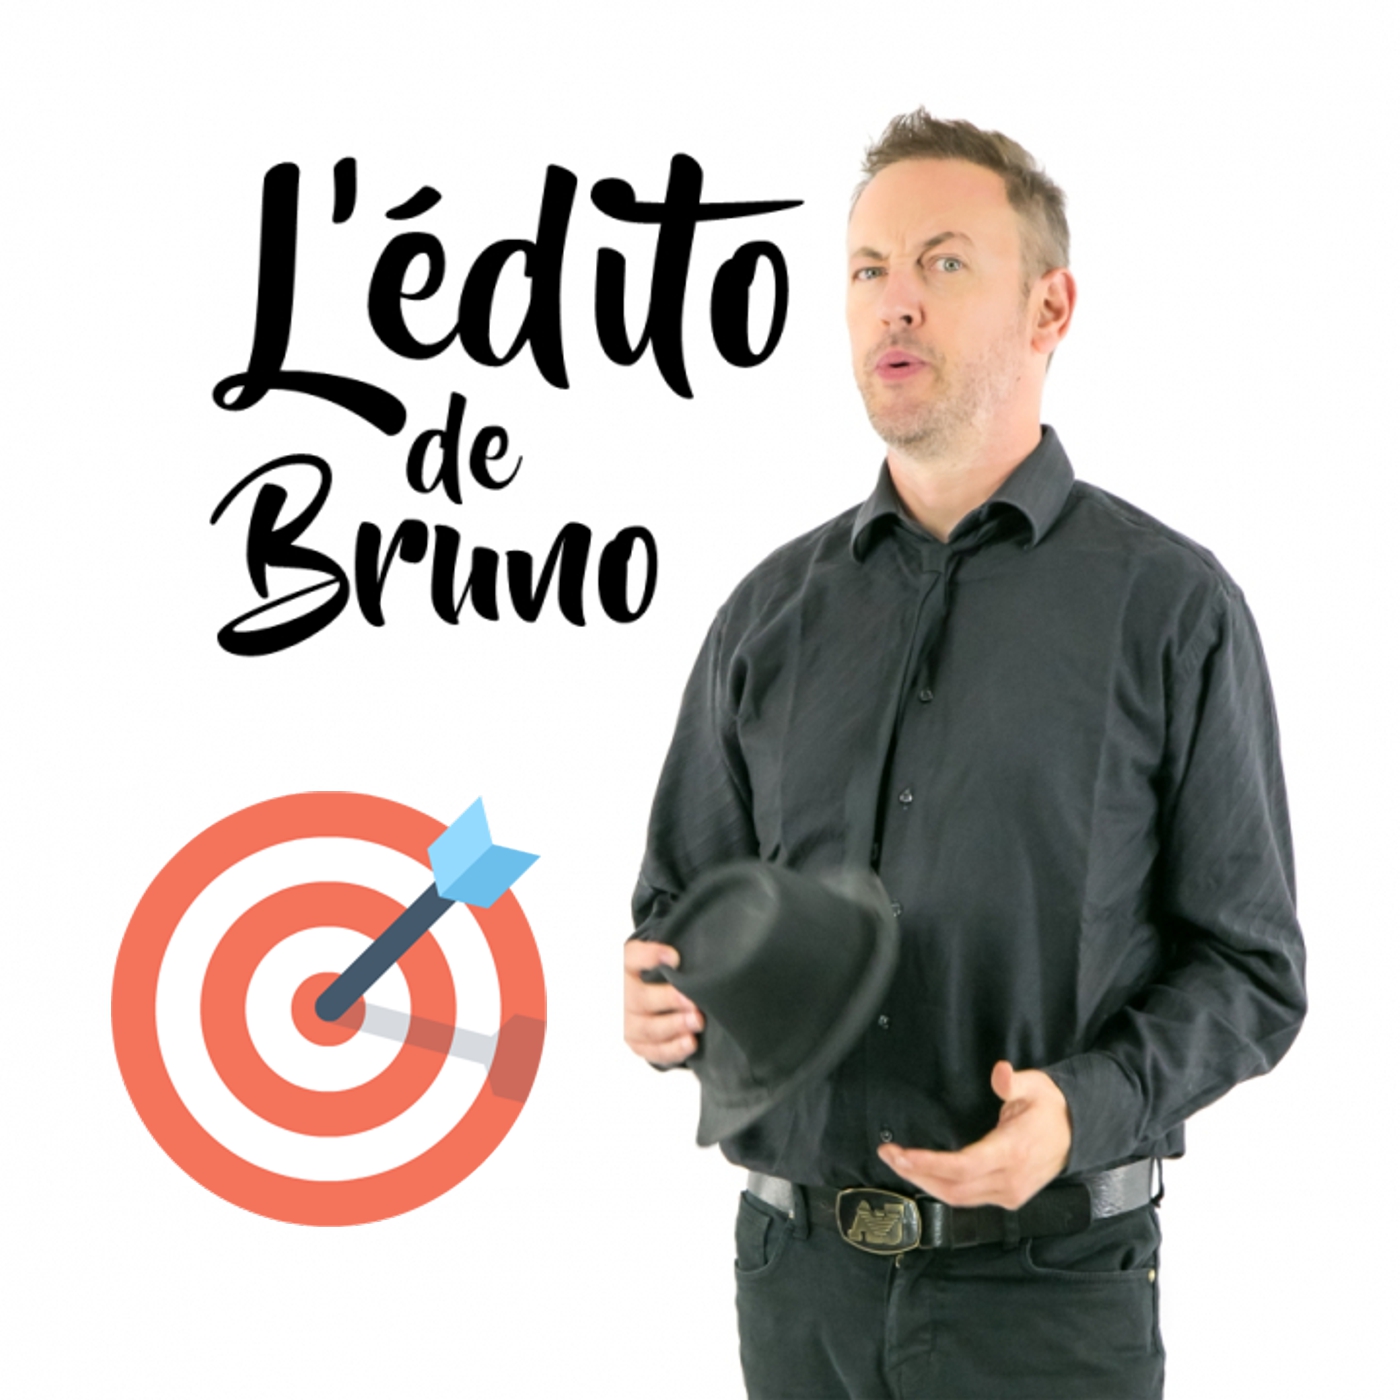 L'édito de Bruno du 09 06 2020 L'édito de Bruno de l'émission Tendance à m'plaire sur Radio G! L'édito de Bruno du 09 06 2020